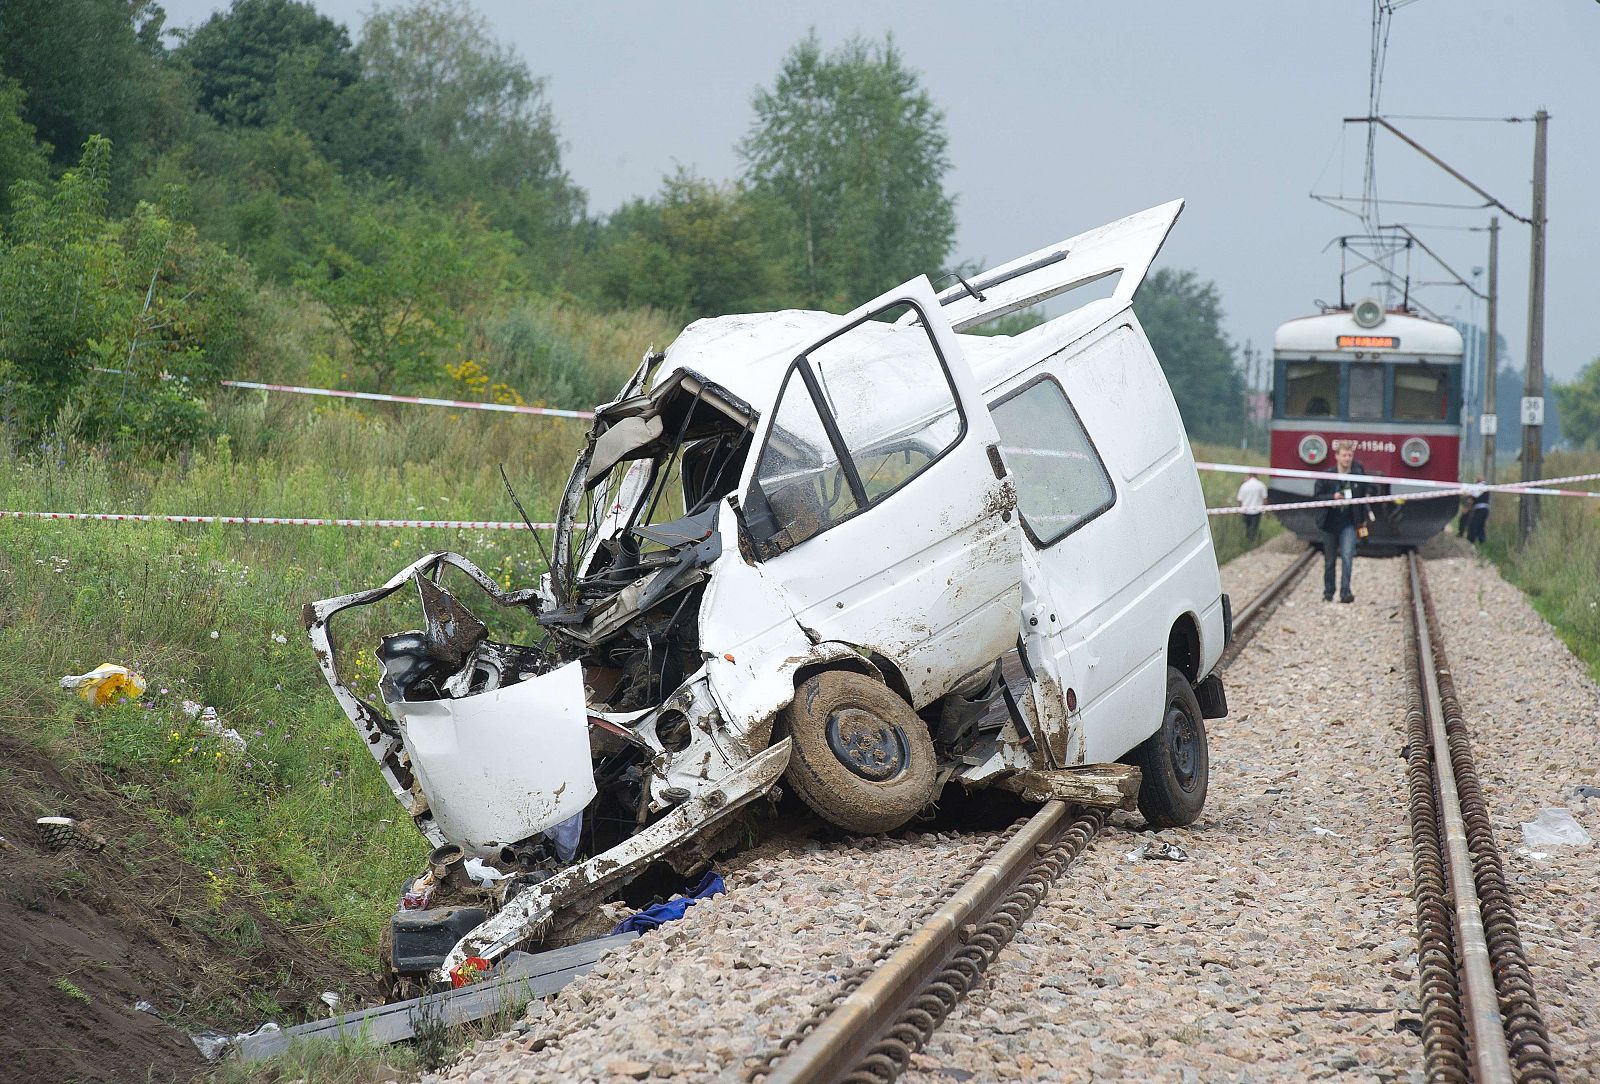 Los restos del minibus siniestrado en Bratoszewice, Polonia, tras colisionar con un tren.